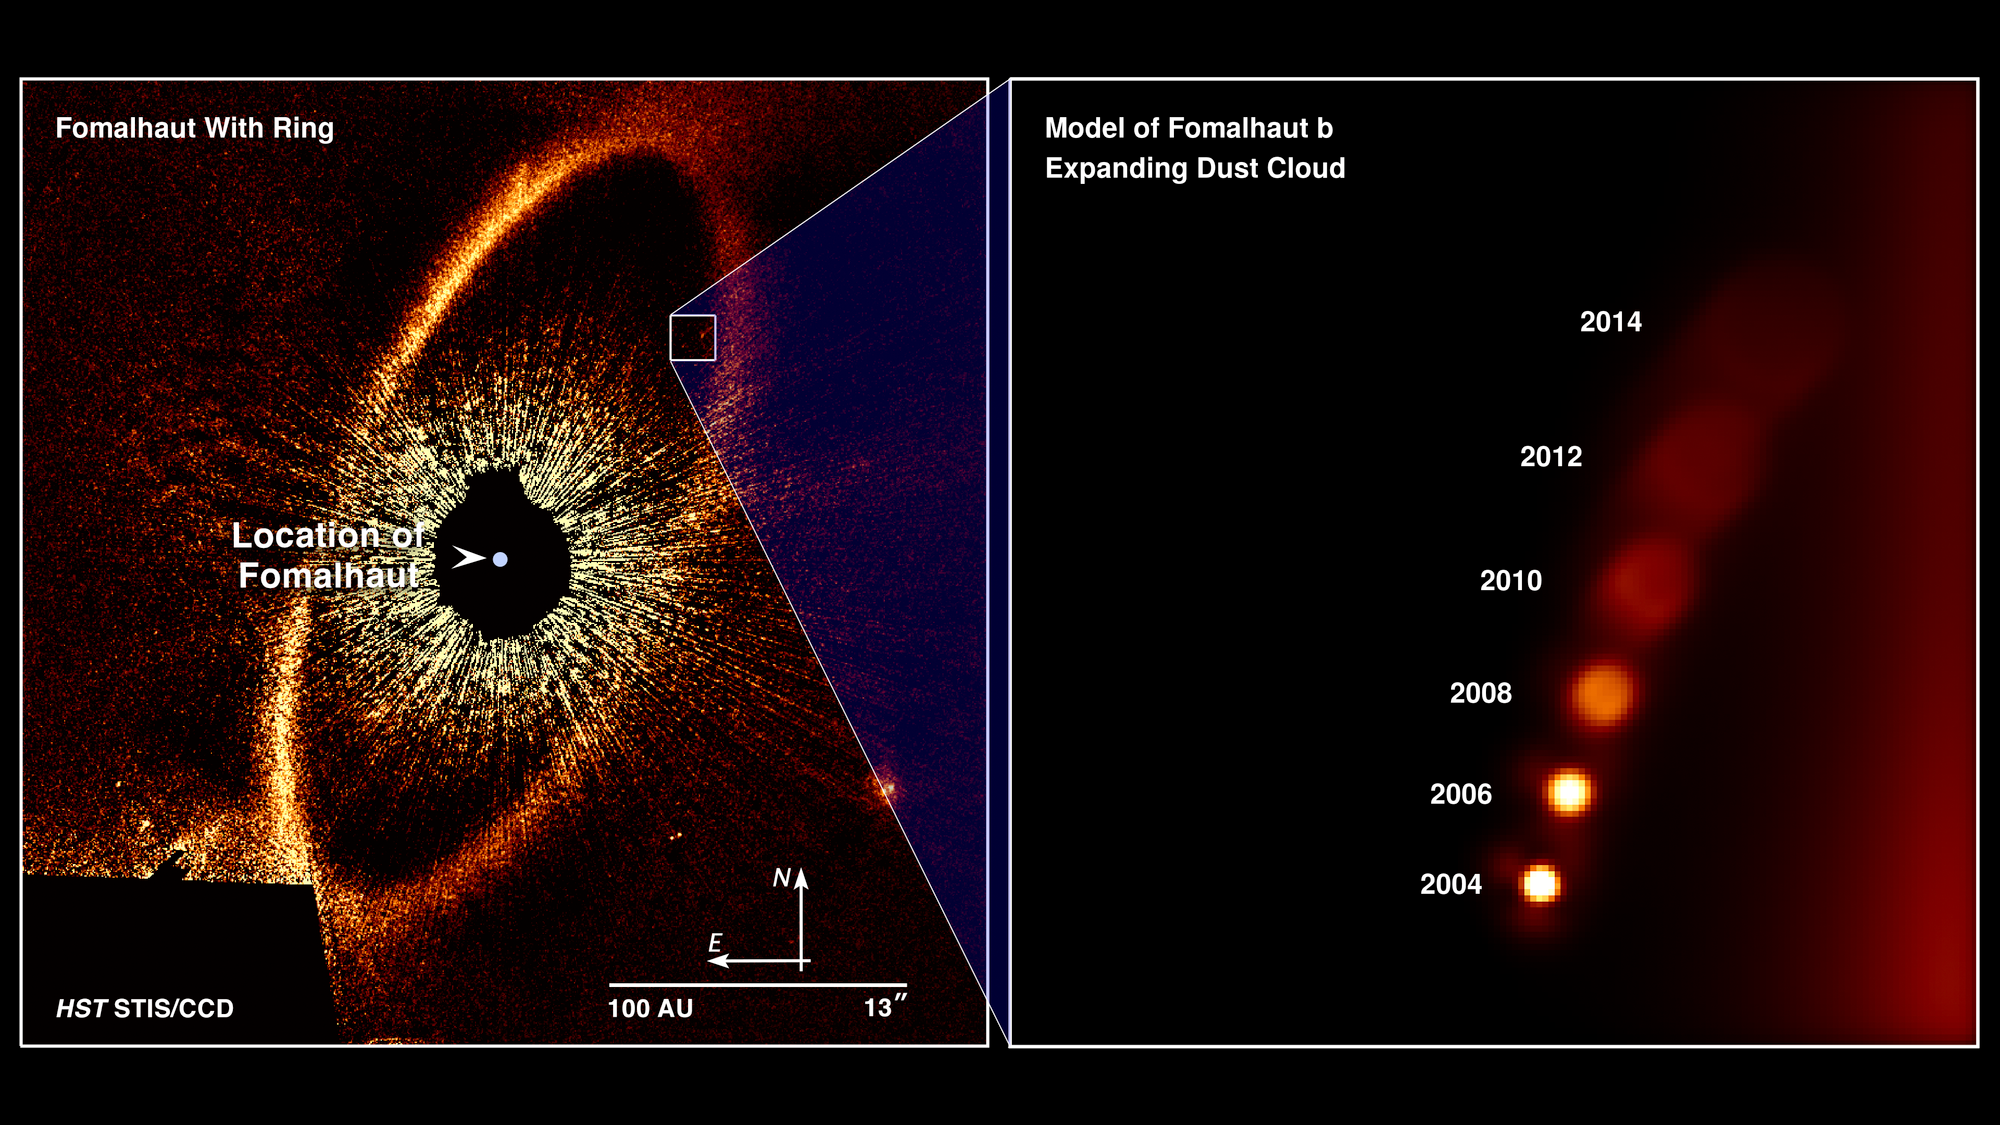 Obraz otoczenia młodej gwiazdy Fomalhaut (panel po lewej) uzyskany z pomocą Kosmicznego Teleskopu Hubble’a. Widać tutaj ogromny pyłowy pierścień otaczający Fomalhaut. Jest to pierścień protoplanetarny, w pobliżu którego zaobserwowano najprawdopodobniej zderzenie protoplanetarnych obiektów o średnicach kilkuset km (panel po prawej – model tego zjawiska). Szacuje się, że podobne kataklizmy wokół Fomalhaut powinny wydarzać się raz na mniej więcej 200 tysięcy lat (patrz rysunek poniżej z wizją artystyczną tego zjawiska). Źródło: NASA, ESA, and A. Gáspár and G. Rieke (University of Arizona)